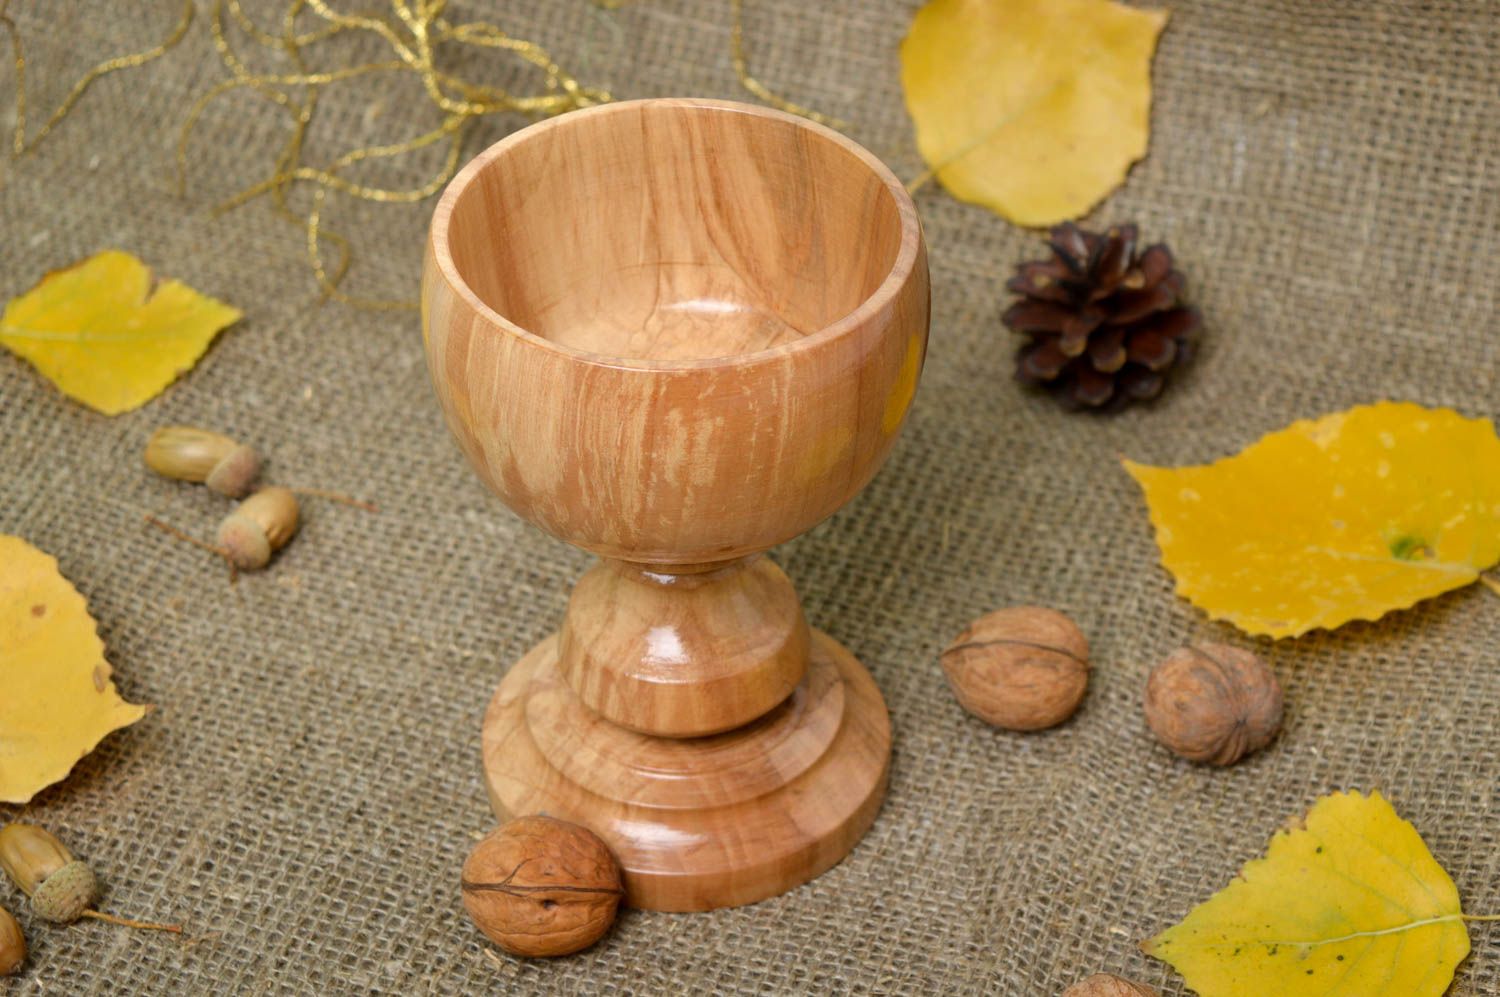 Pokal aus Holz handmade schönes Öko Geschirr tolles Geschenk für Männer 200 ml foto 1